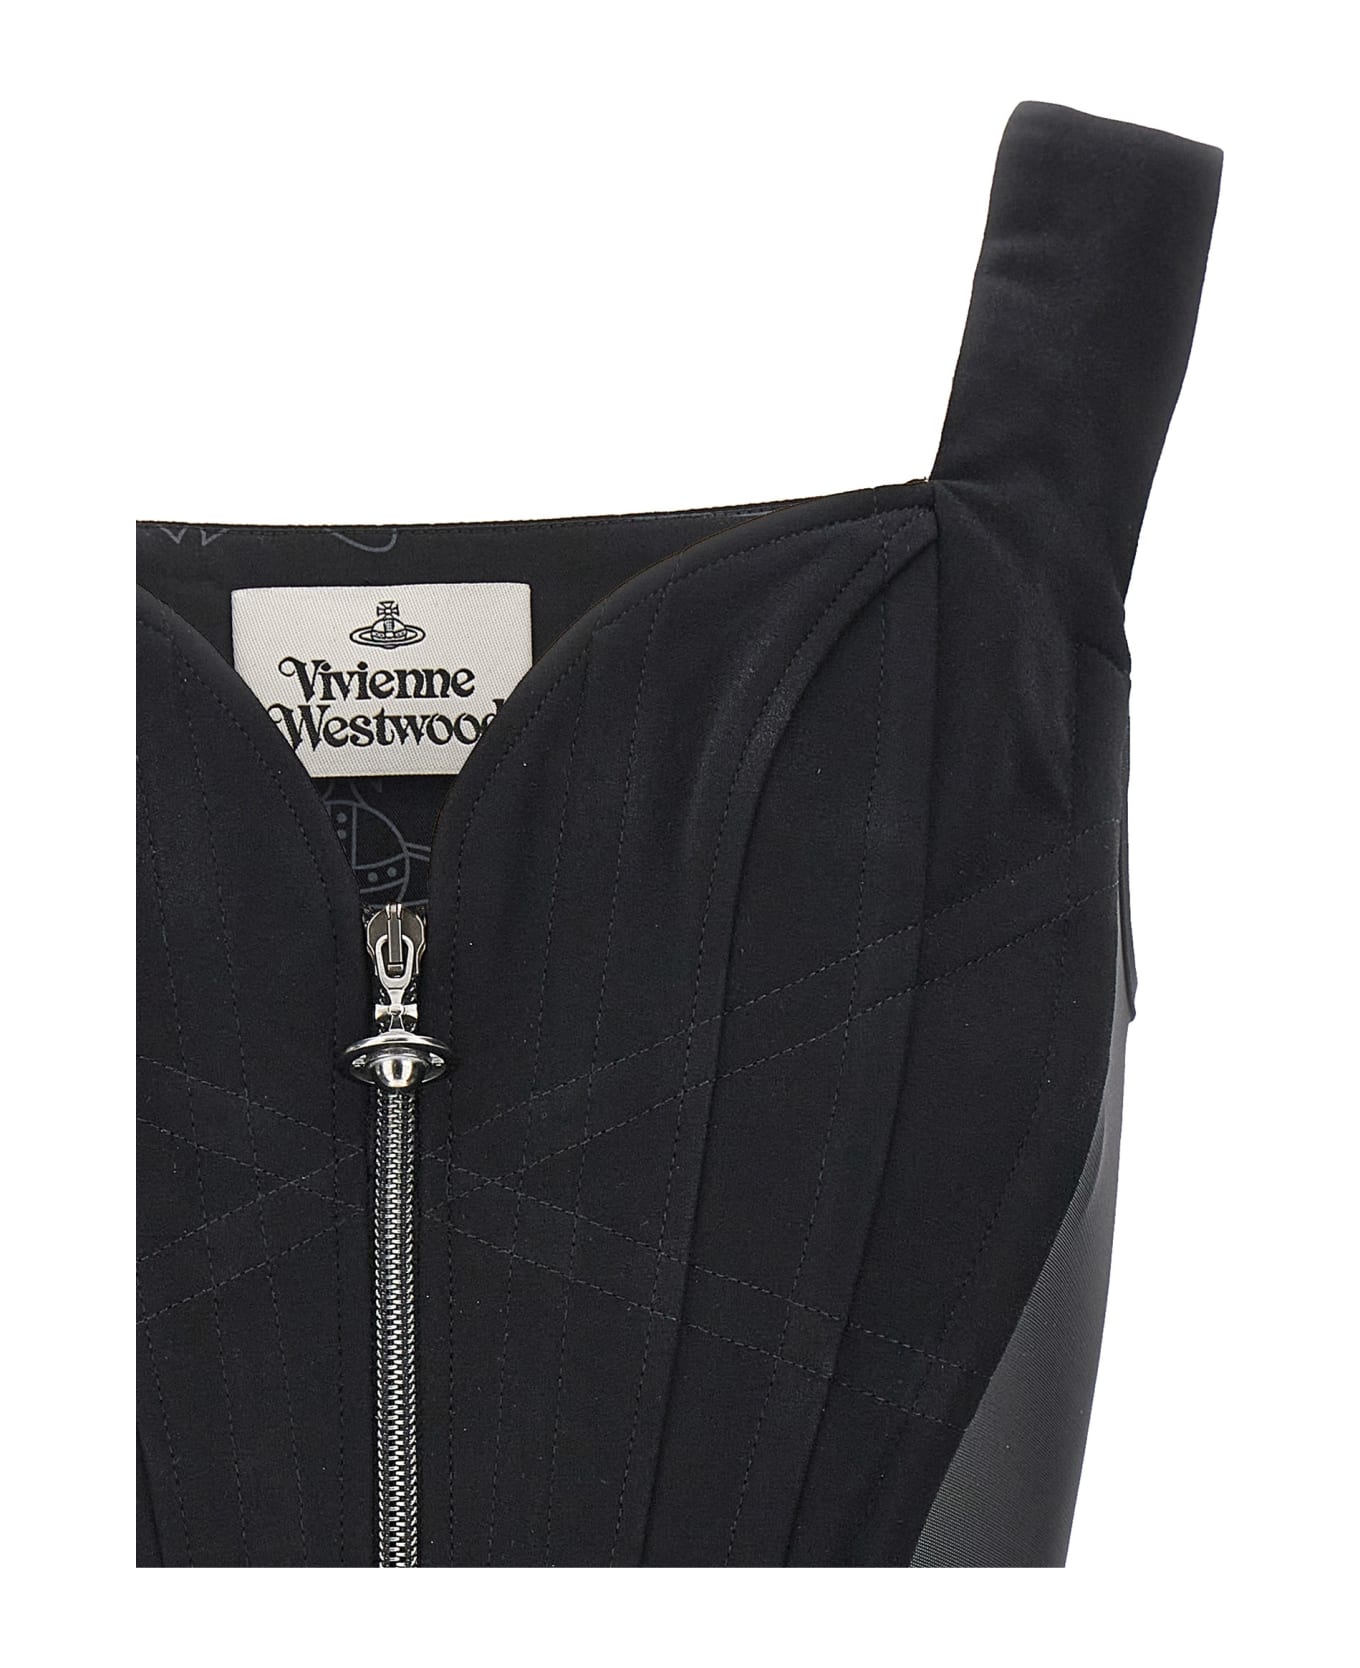 Vivienne Westwood 'classic' Corset - Black  